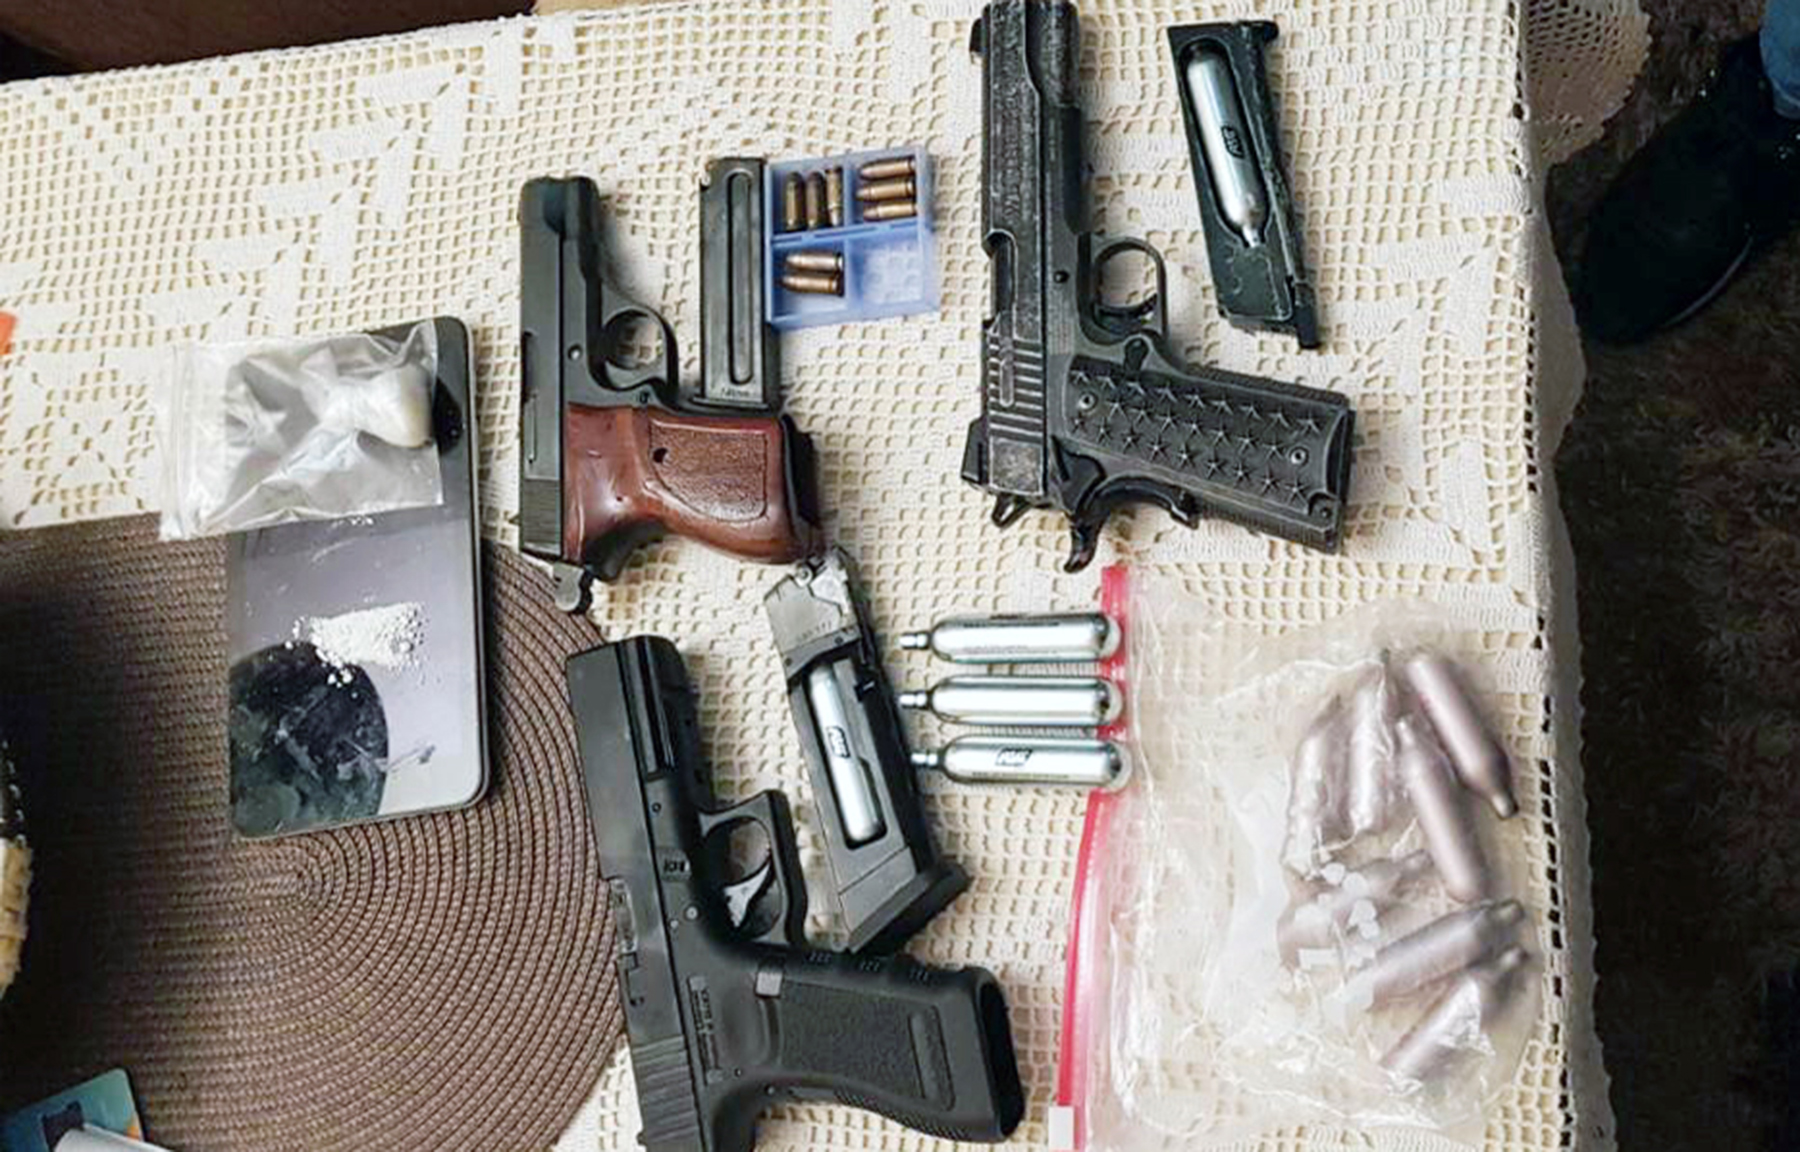 Pretresom stana osumnjičenog policija pronašla različito oružje, municiju i paketić amfetamina